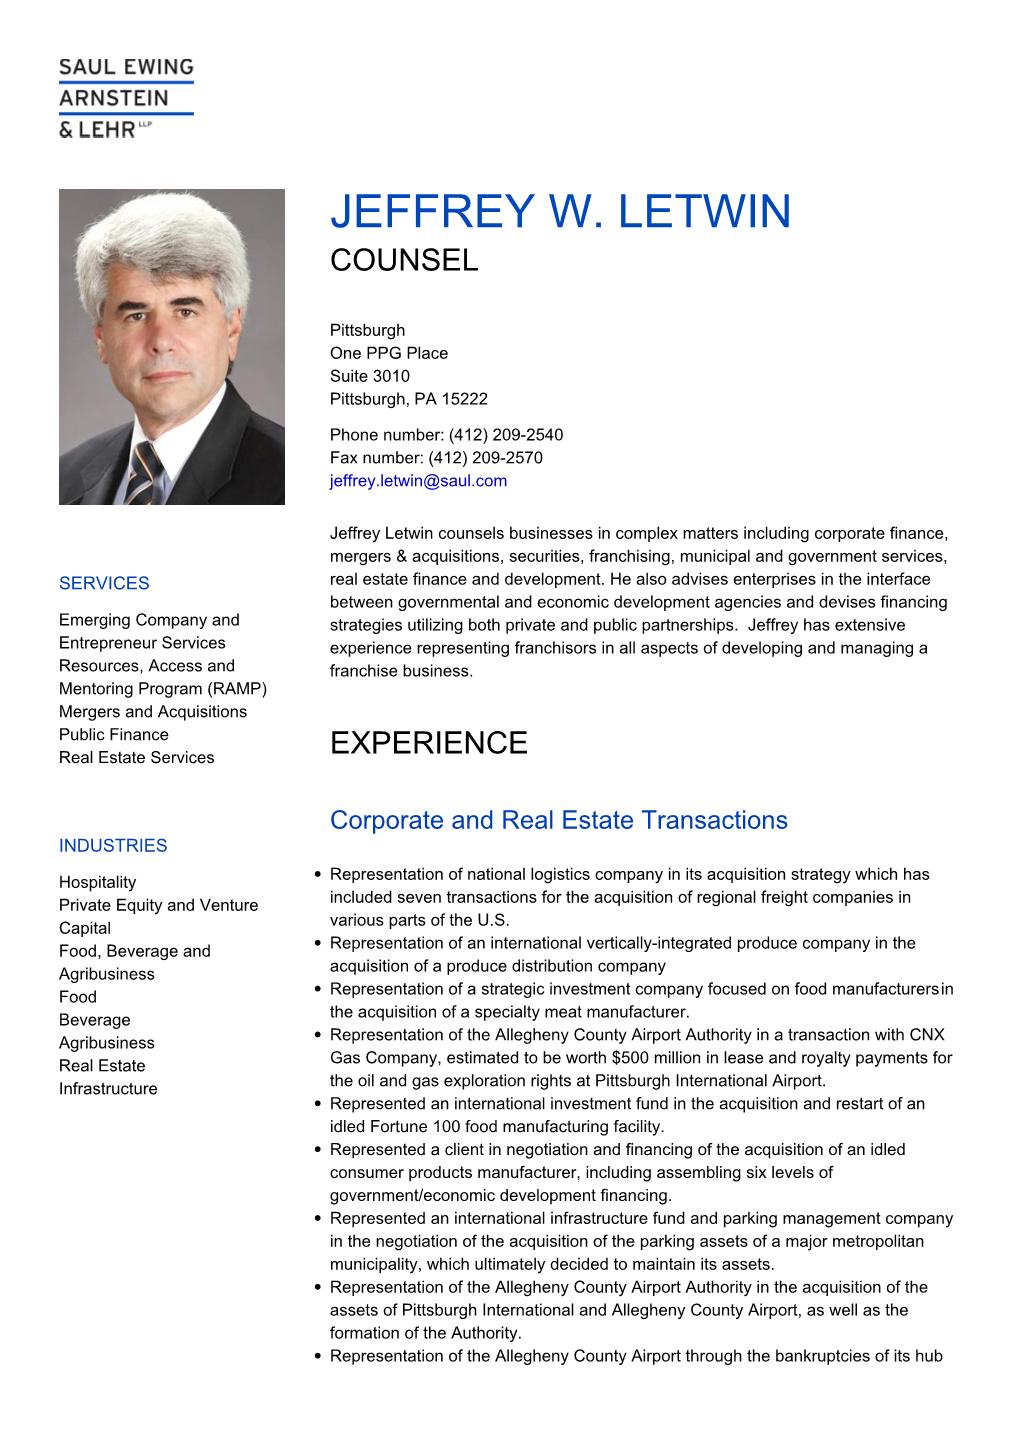 Jeffrey W. Letwin Counsel